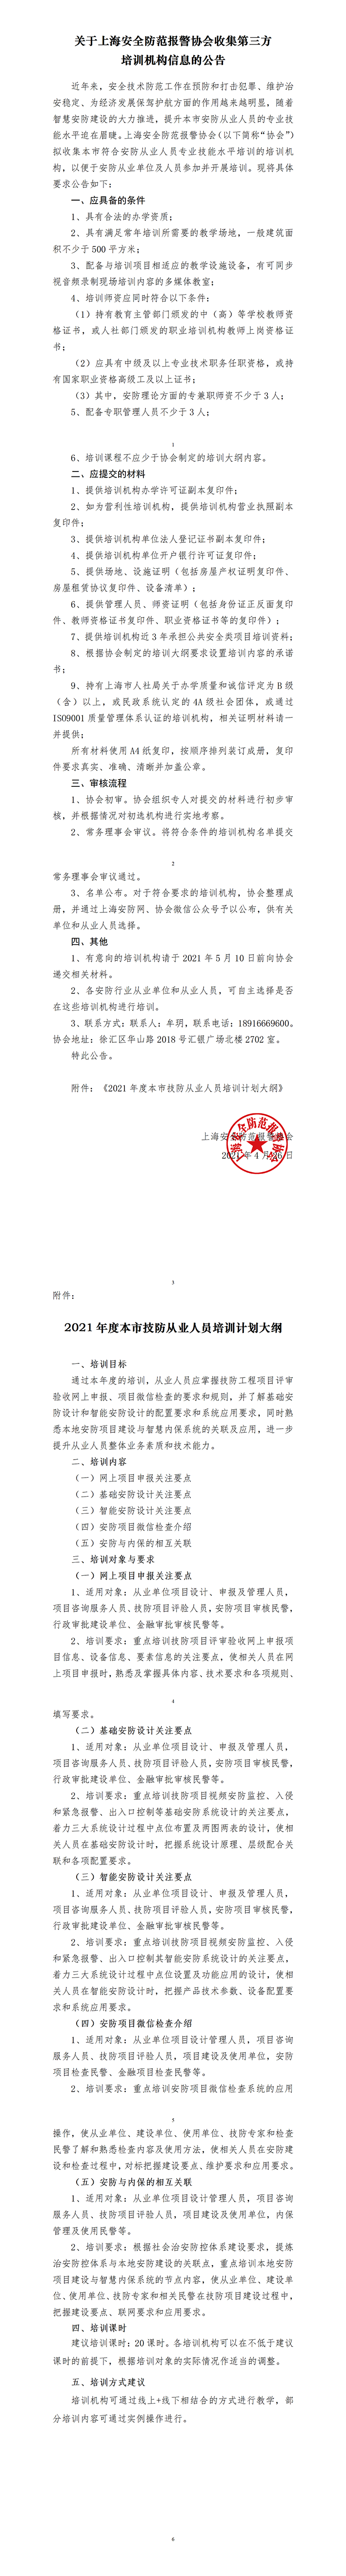 关于上海安全防范报警协会征集第三方机构的公告（最终版）(1)w.png